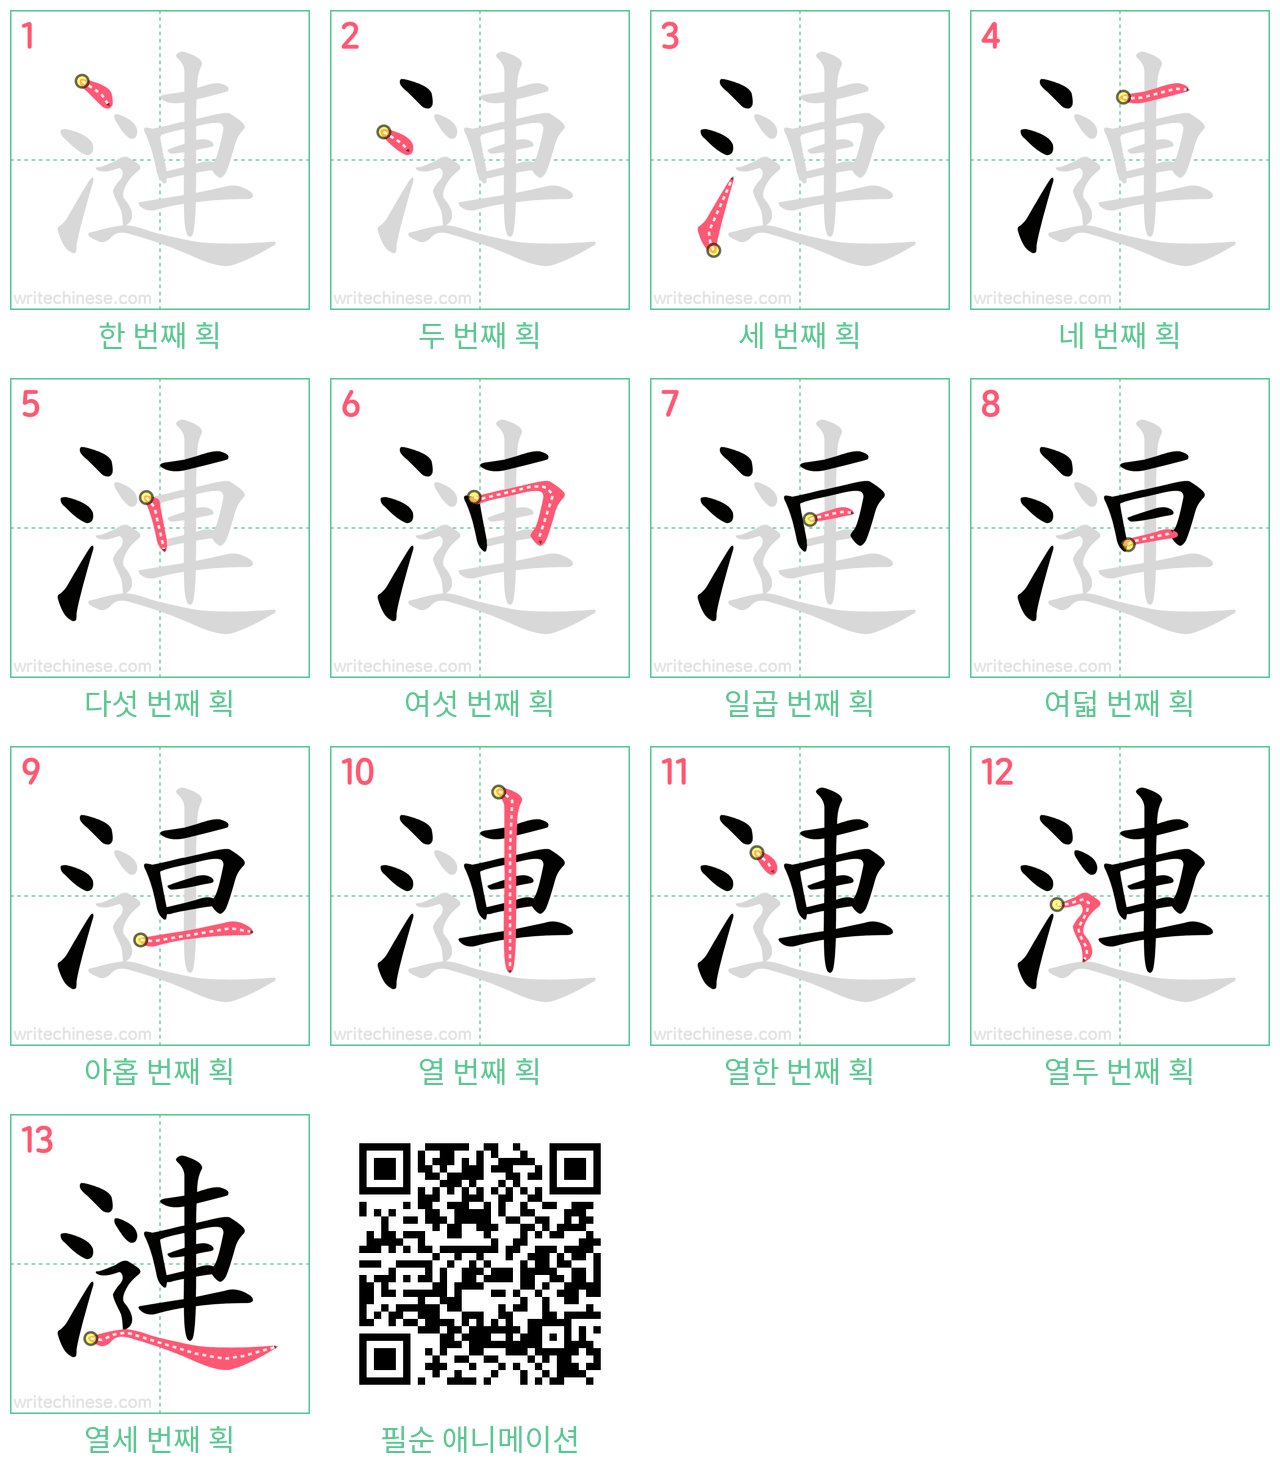 漣 step-by-step stroke order diagrams